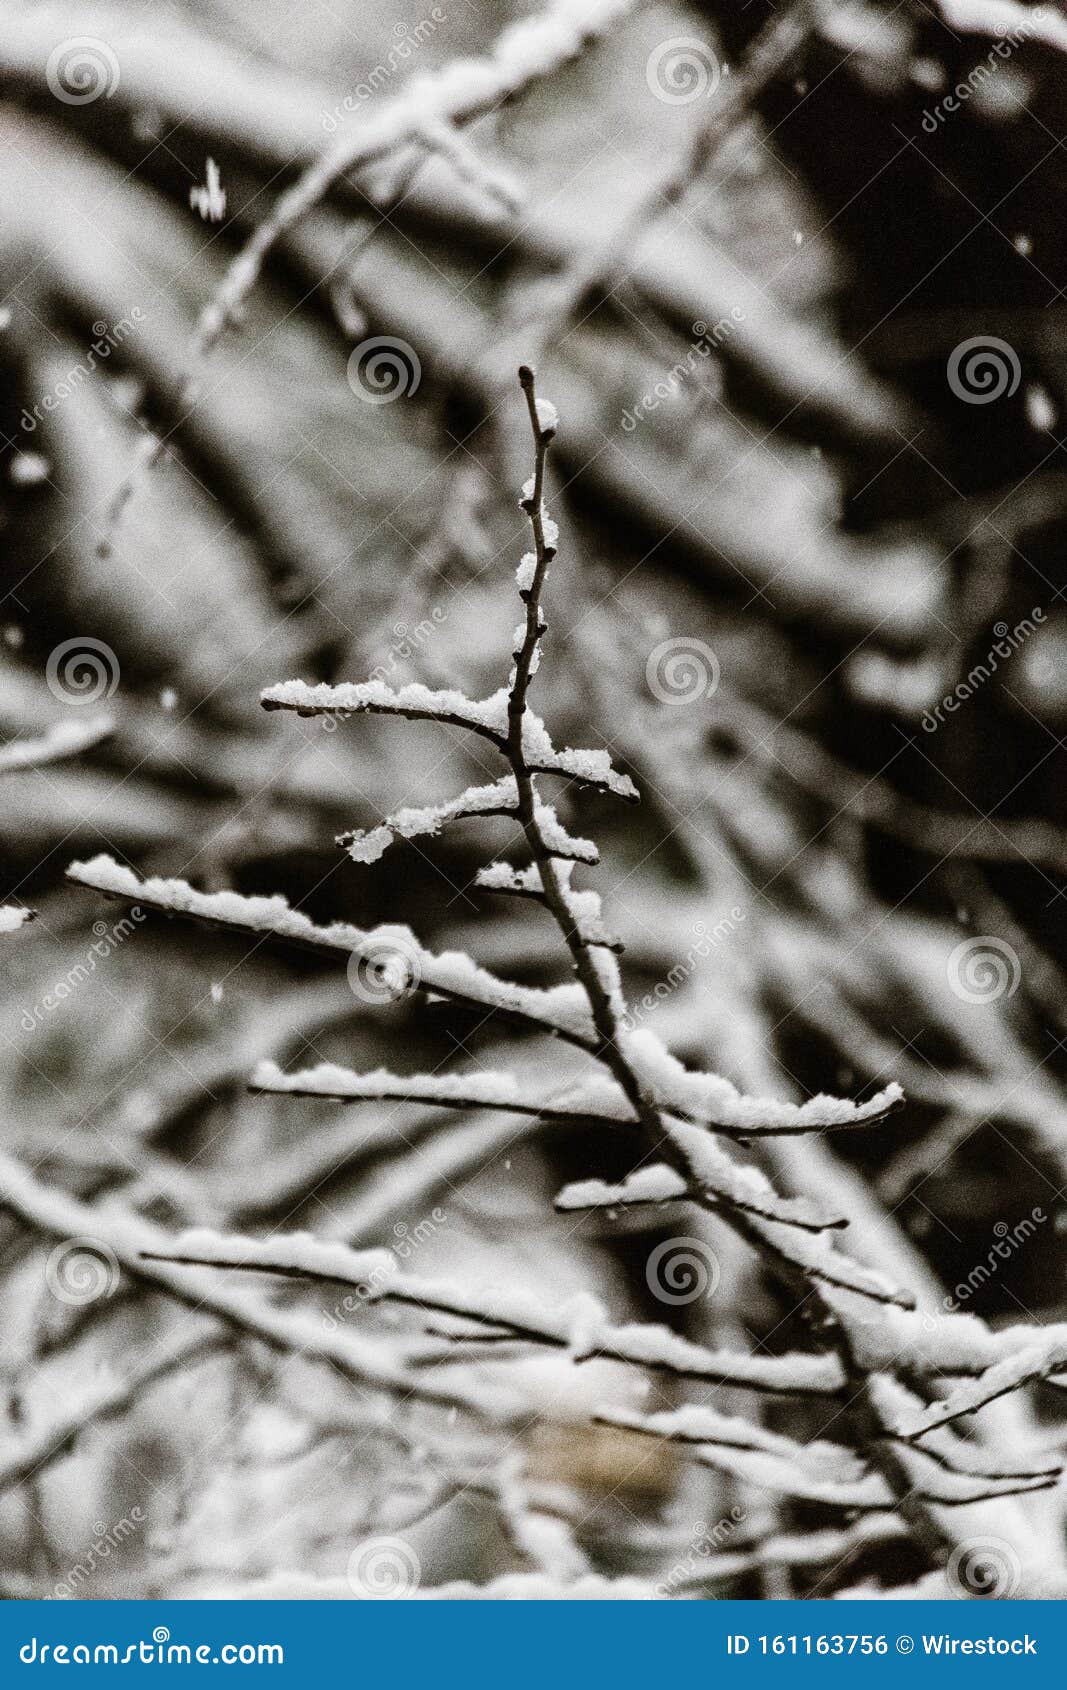 裸树枝上美丽雪花垂直近照库存照片 图片包括有裸树枝上美丽雪花垂直近照